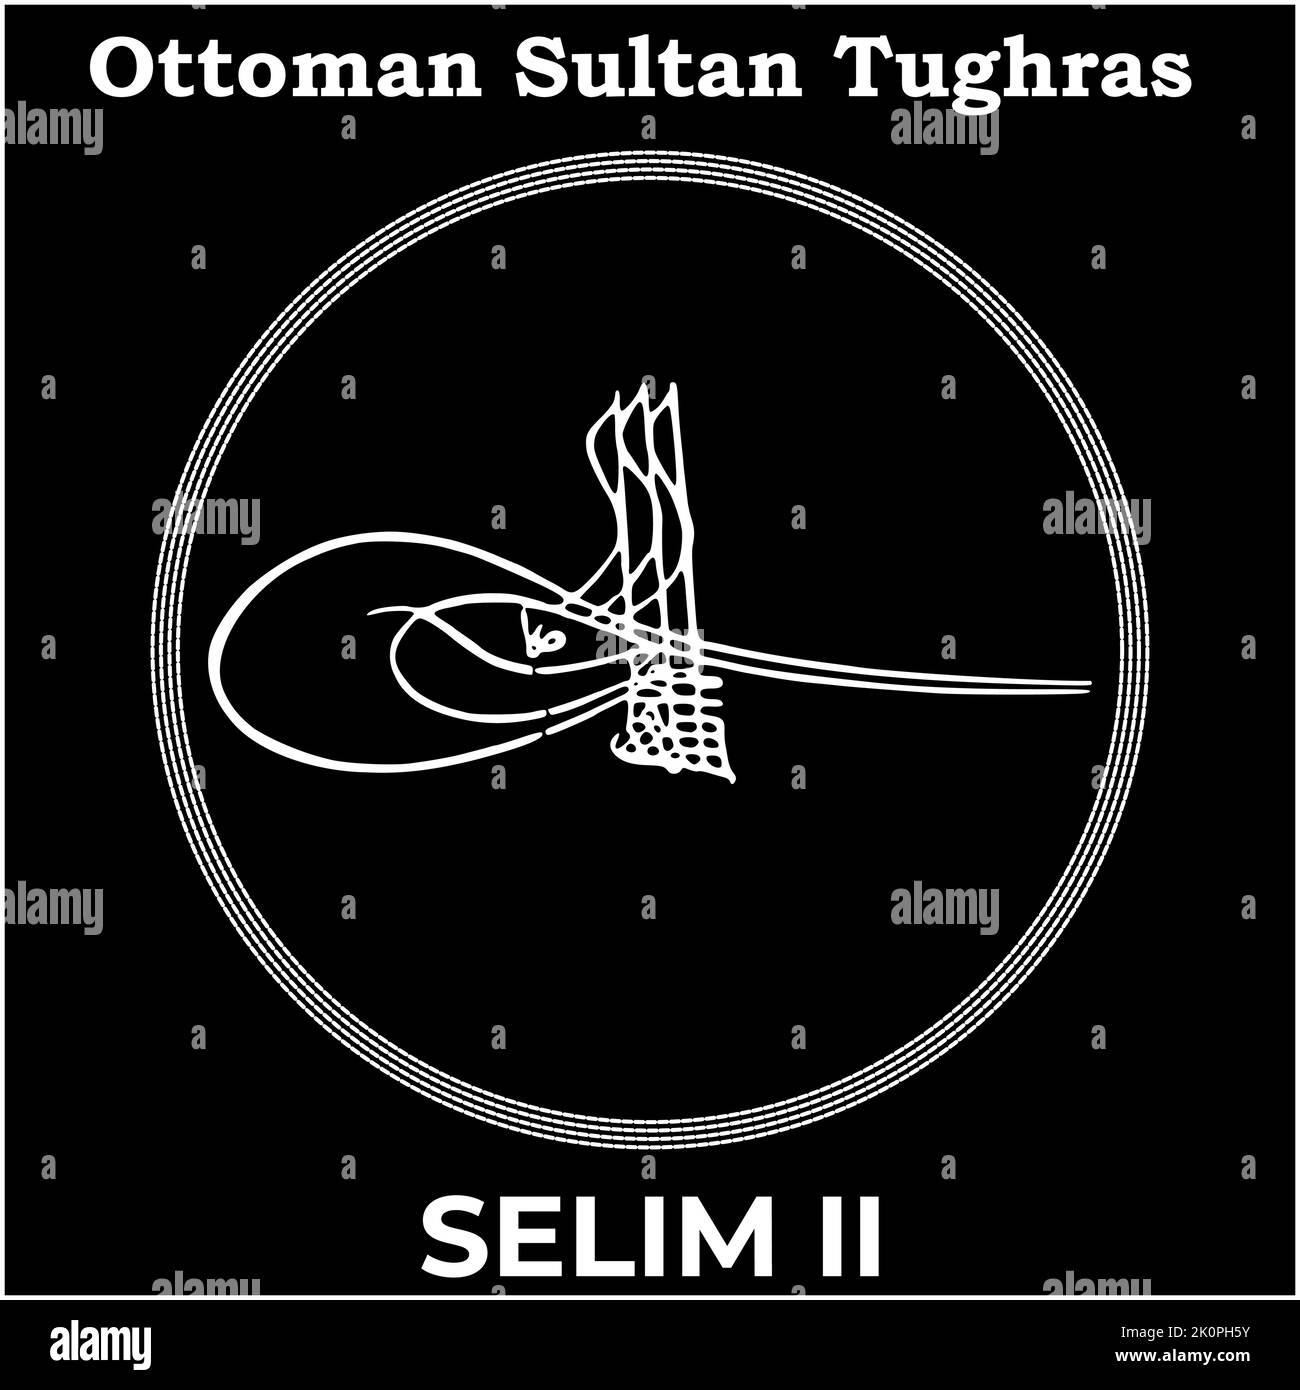 Vektorbild mit Tughra-Signatur des osmanischen elften Sultans Selim II, Tughra von Selim II mit schwarzem Hintergrund. Stock Vektor